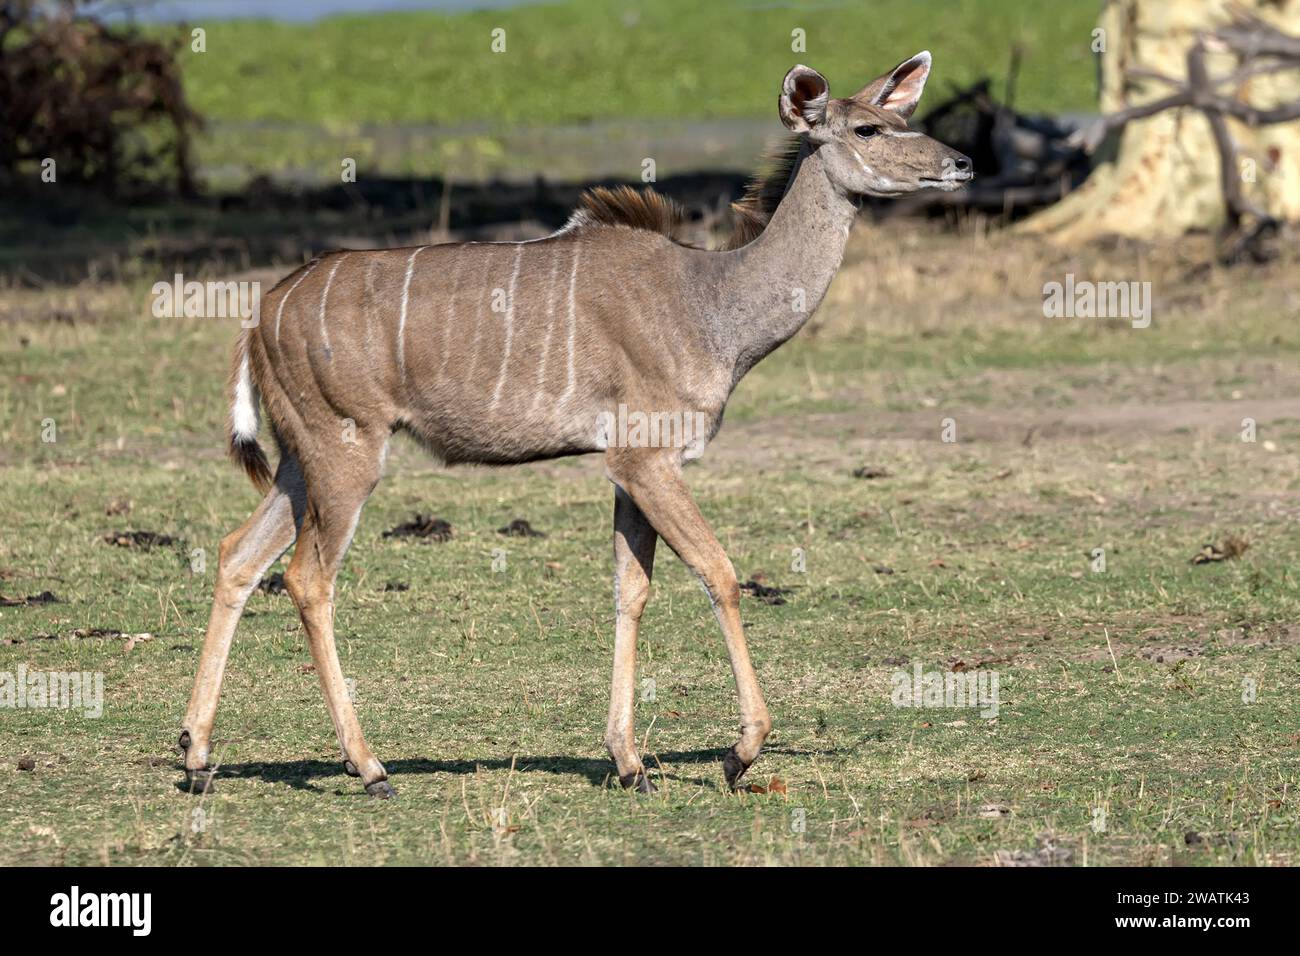 Female, Greater Kudu, Liwonde National Park, Malawi Stock Photo